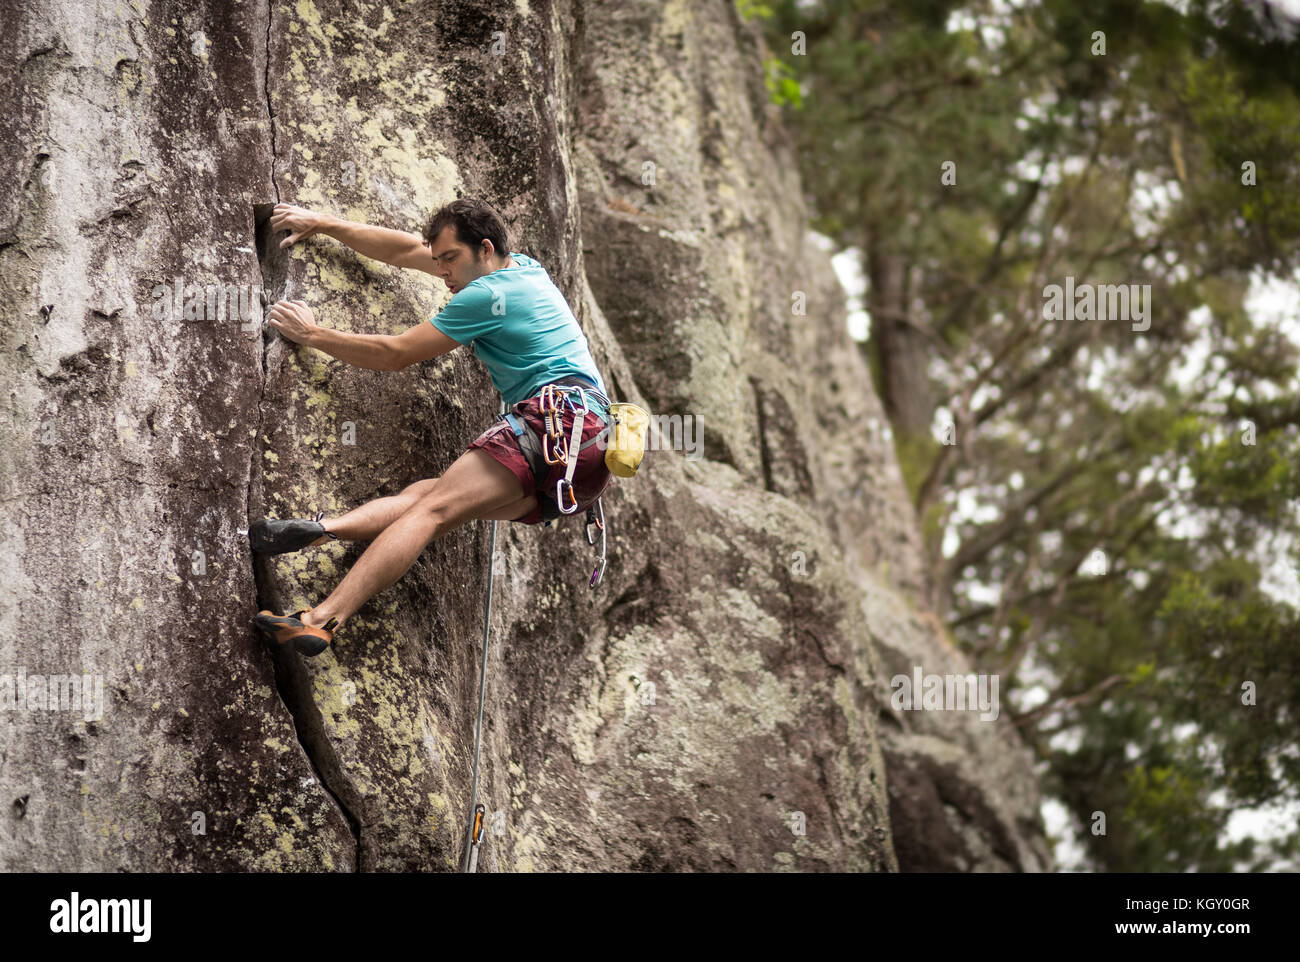 Rock climbing at Waipapa Stock Photo